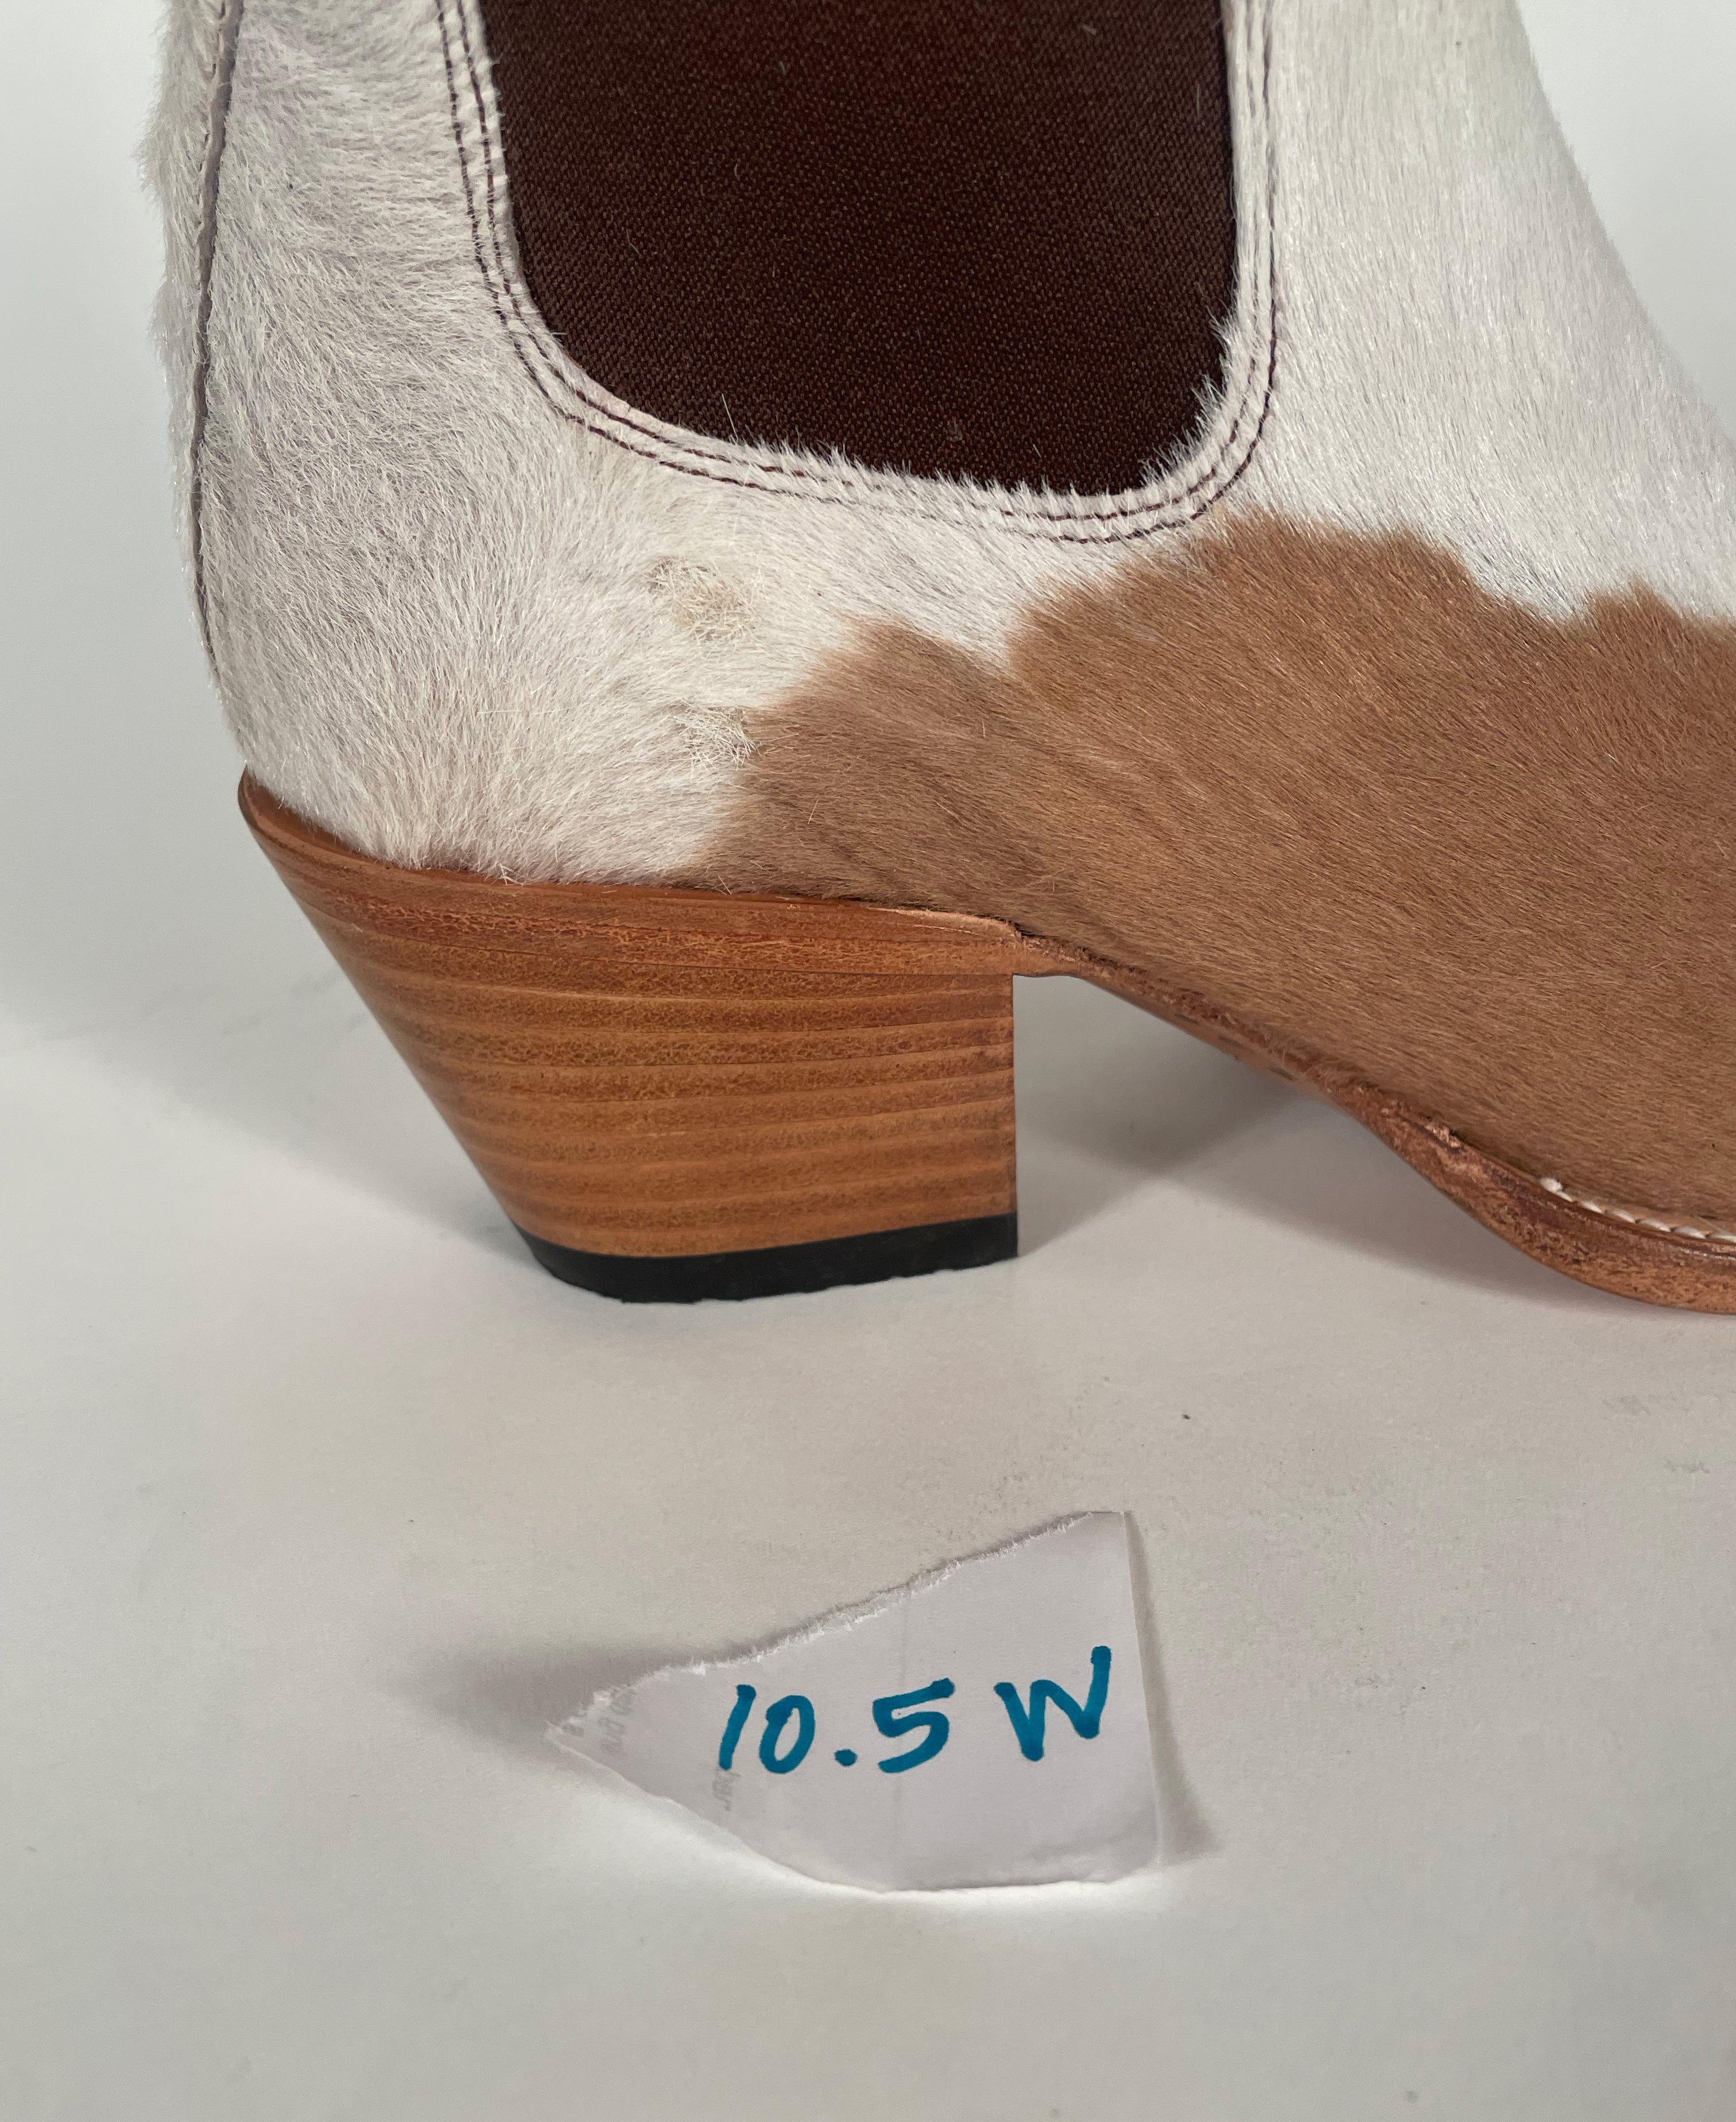 No.1001 freeway chelsea brown/white fur sz 10.5w pskaufmanfootwear